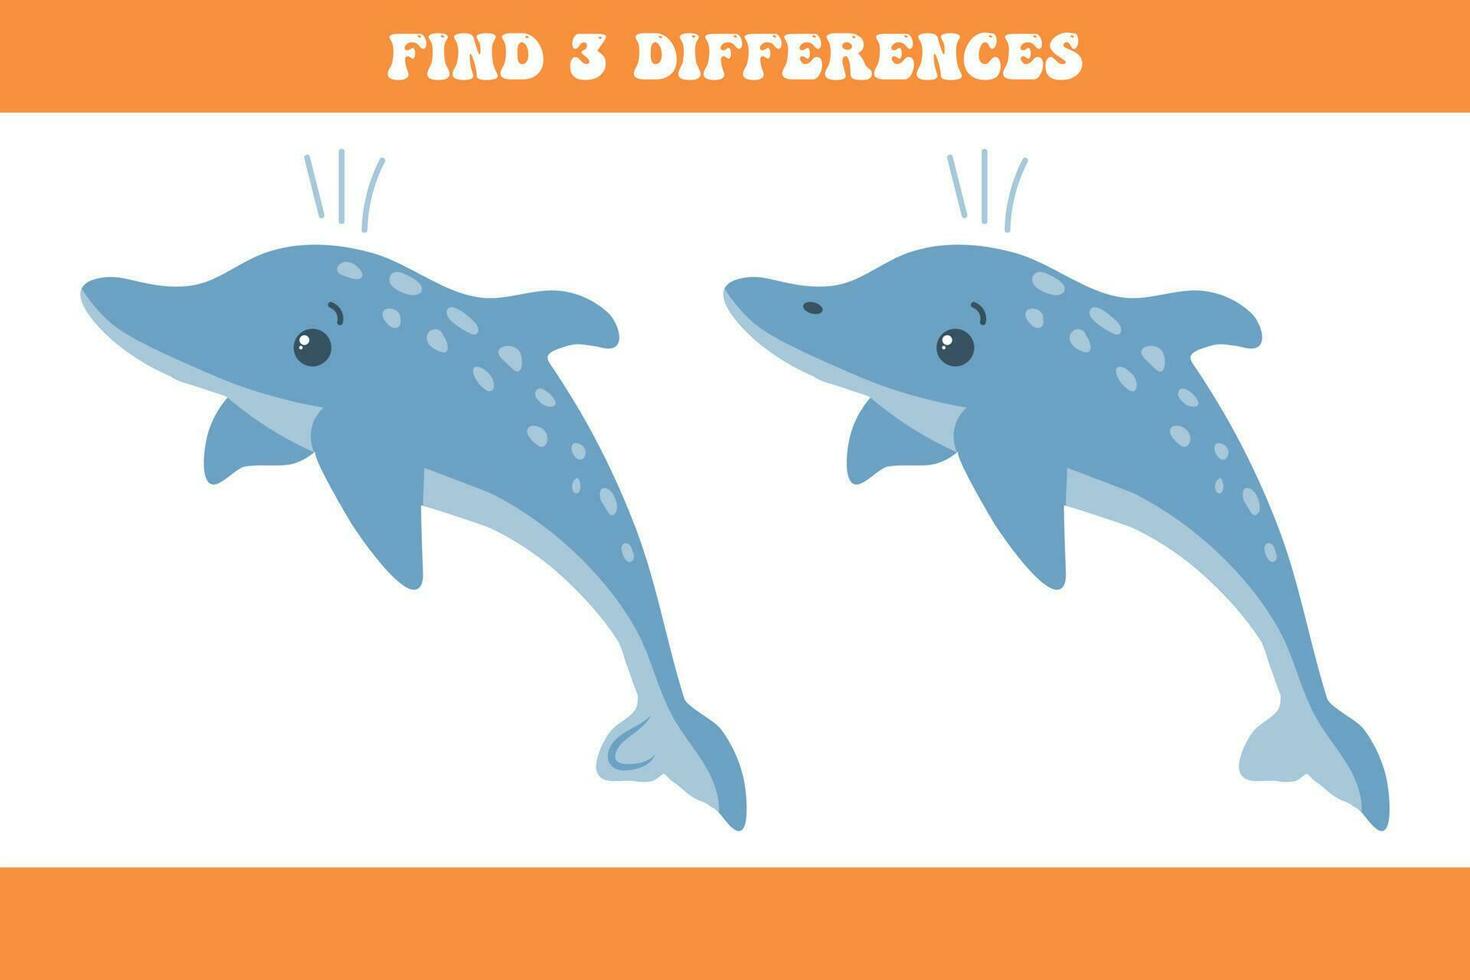 encontrar 3 diferenças entre a dois golfinhos. crianças lógica jogo, educacional quebra-cabeça, vetor